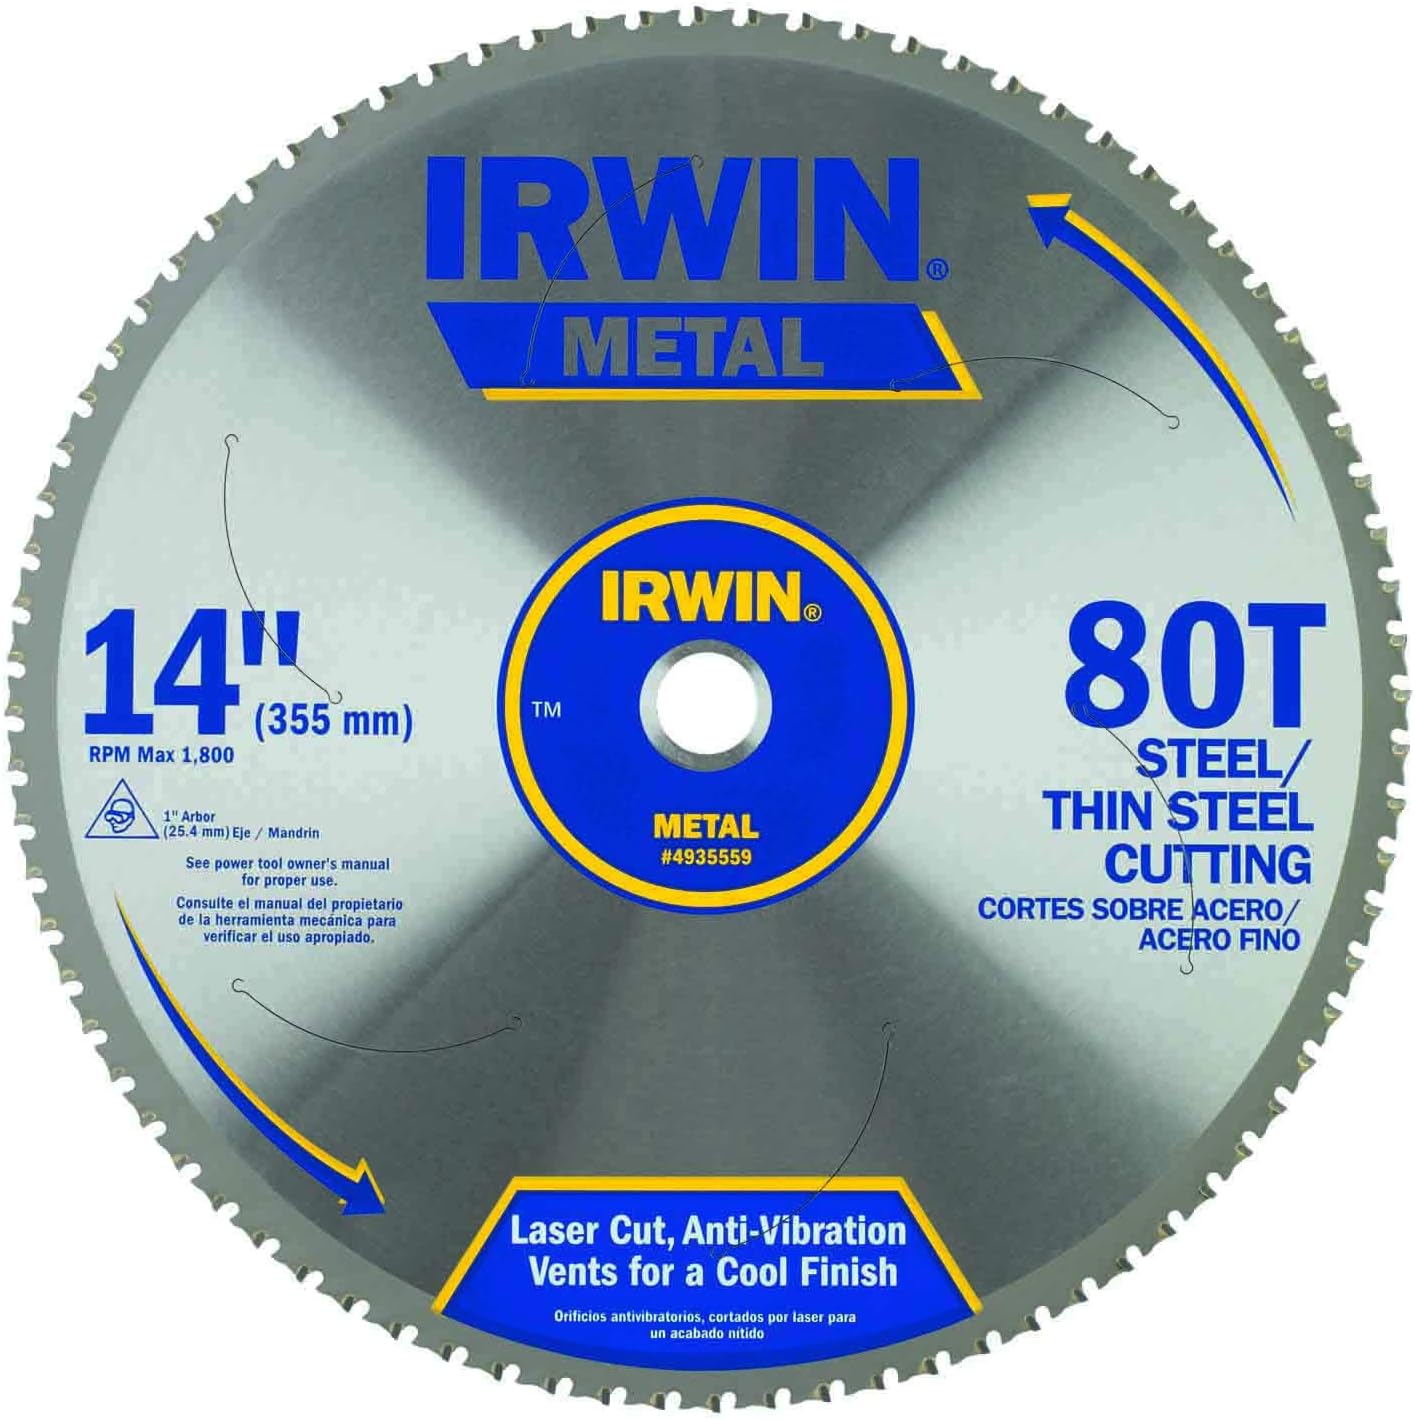 Irwin Tools IRWIN 7-1/4-Inch Metal Cutting Circular Saw Blade, 68-Tooth (4935560)